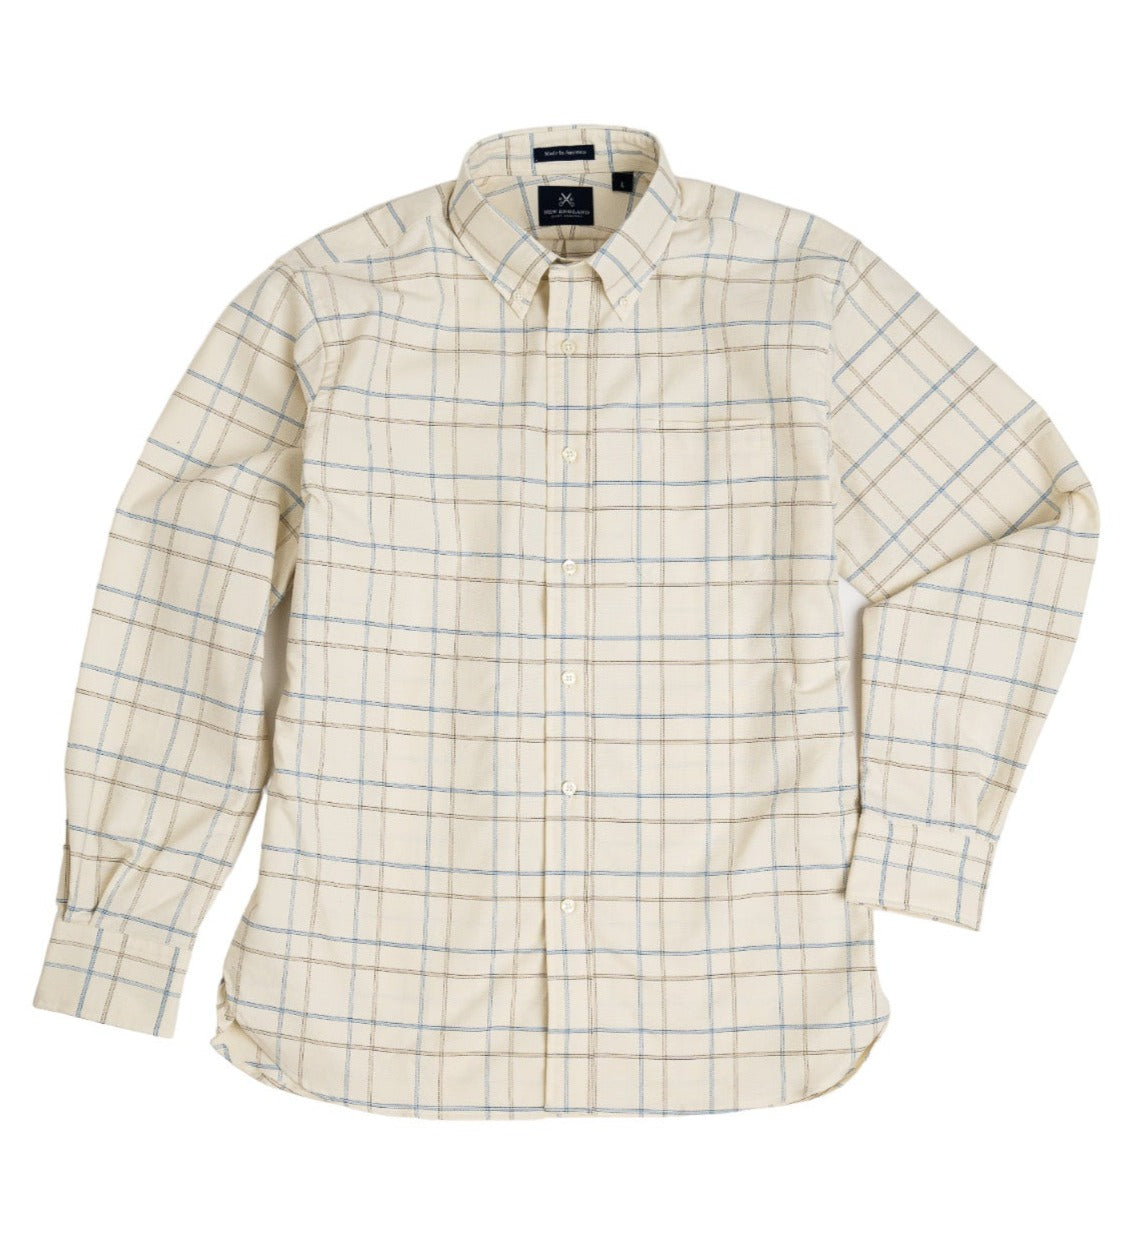 Shop Men's Sport Shirts, Oxfords, Flannel, & More